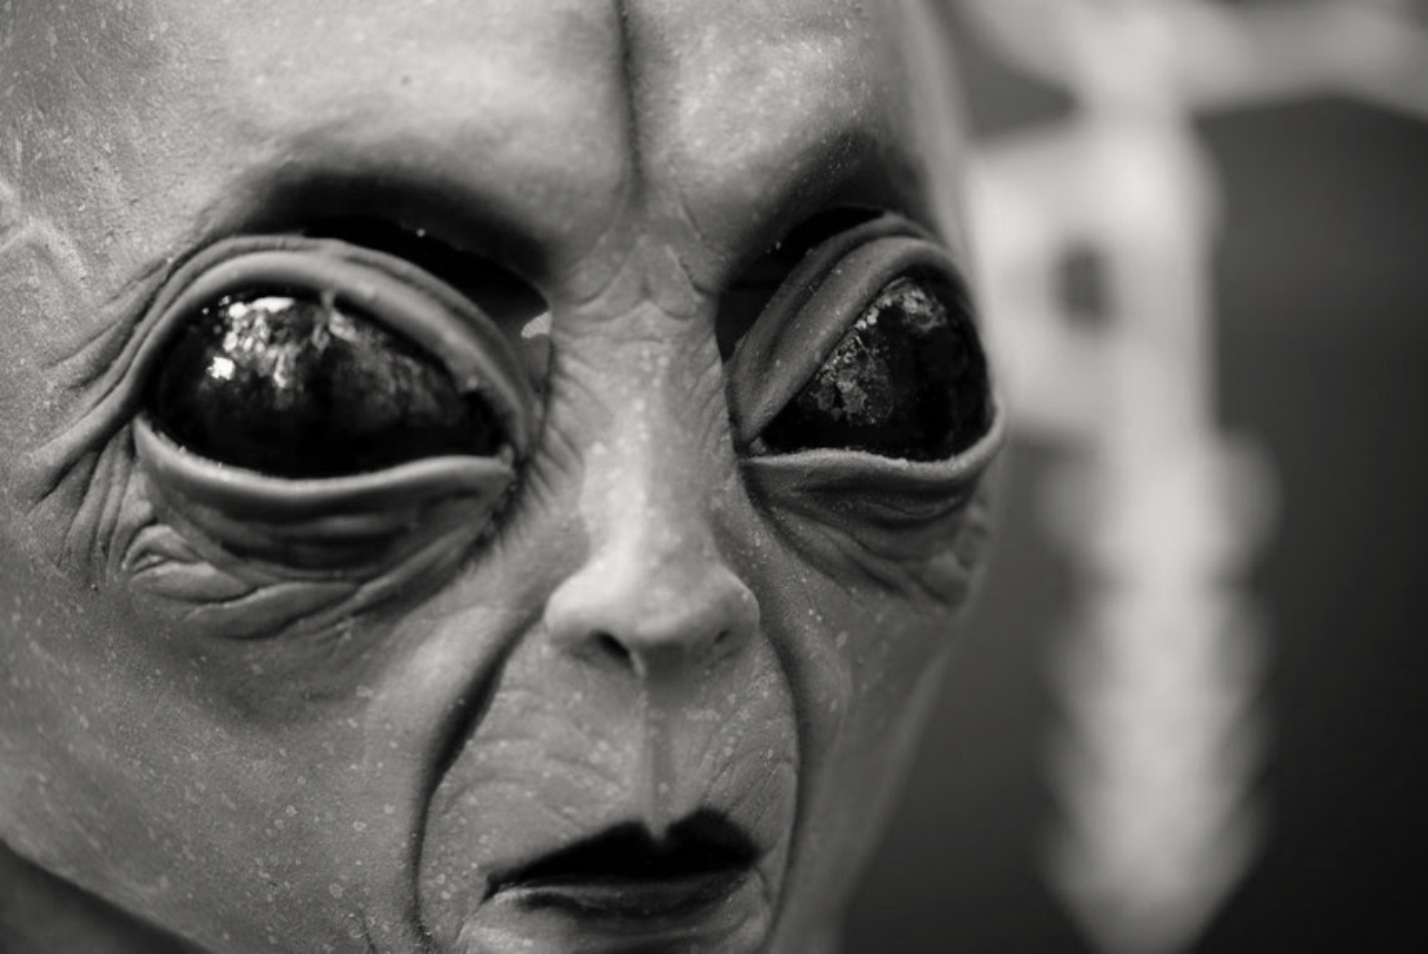 Project Serpo: De geheime uitwisseling tussen buitenaardse wezens en mensen